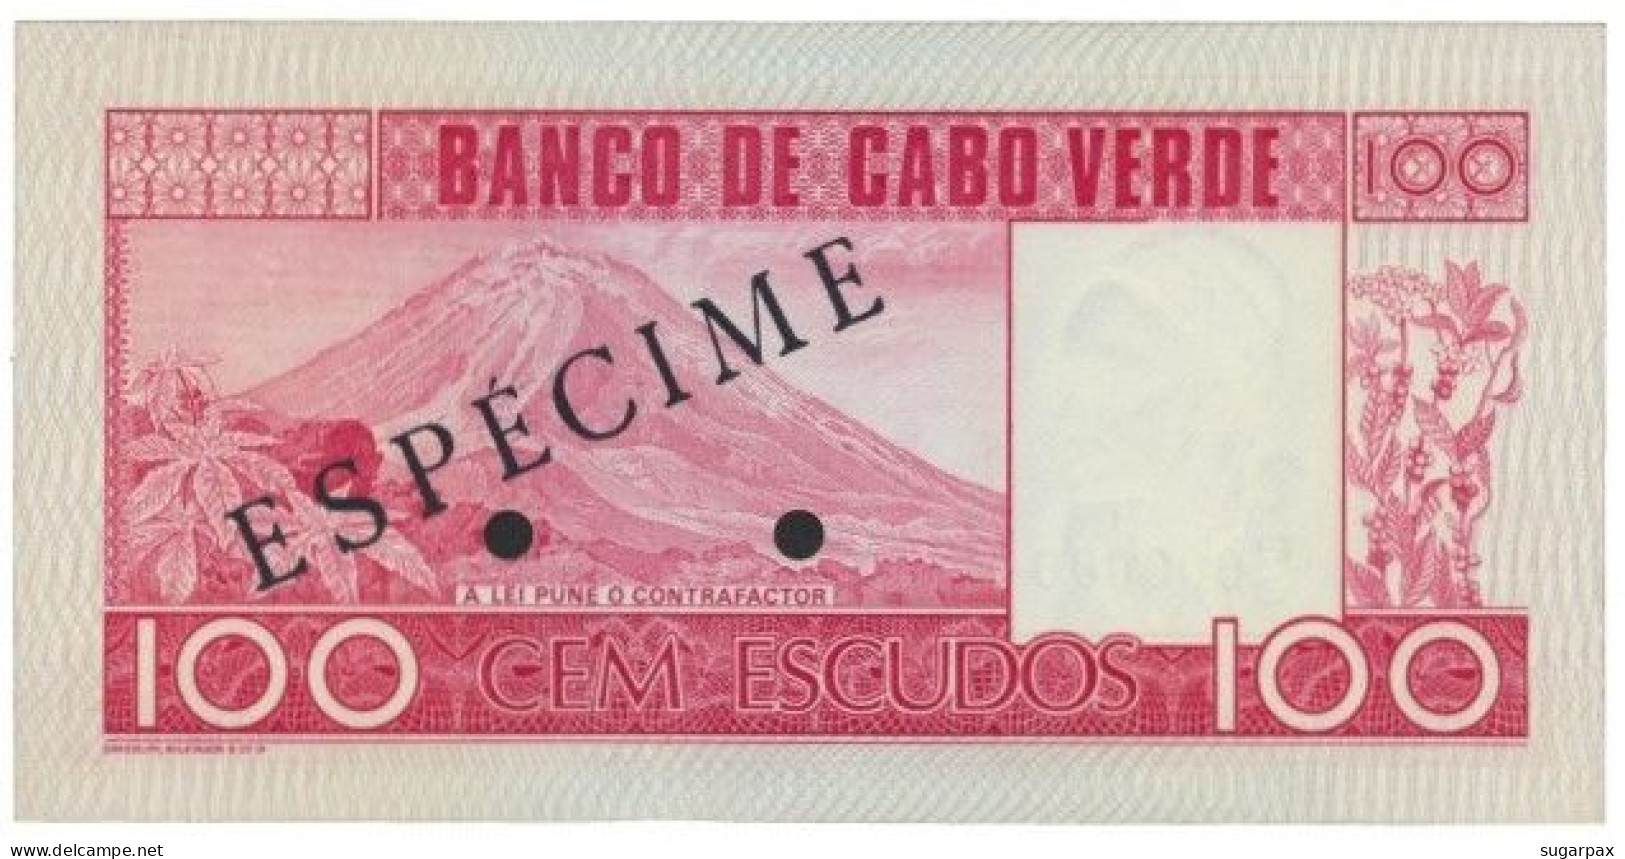 CAPE VERDE - 100 ESCUDOS - 20.01.1977 - Pick 54.s2 - Unc. - ESPÉCIME In BLACK - Capo Verde